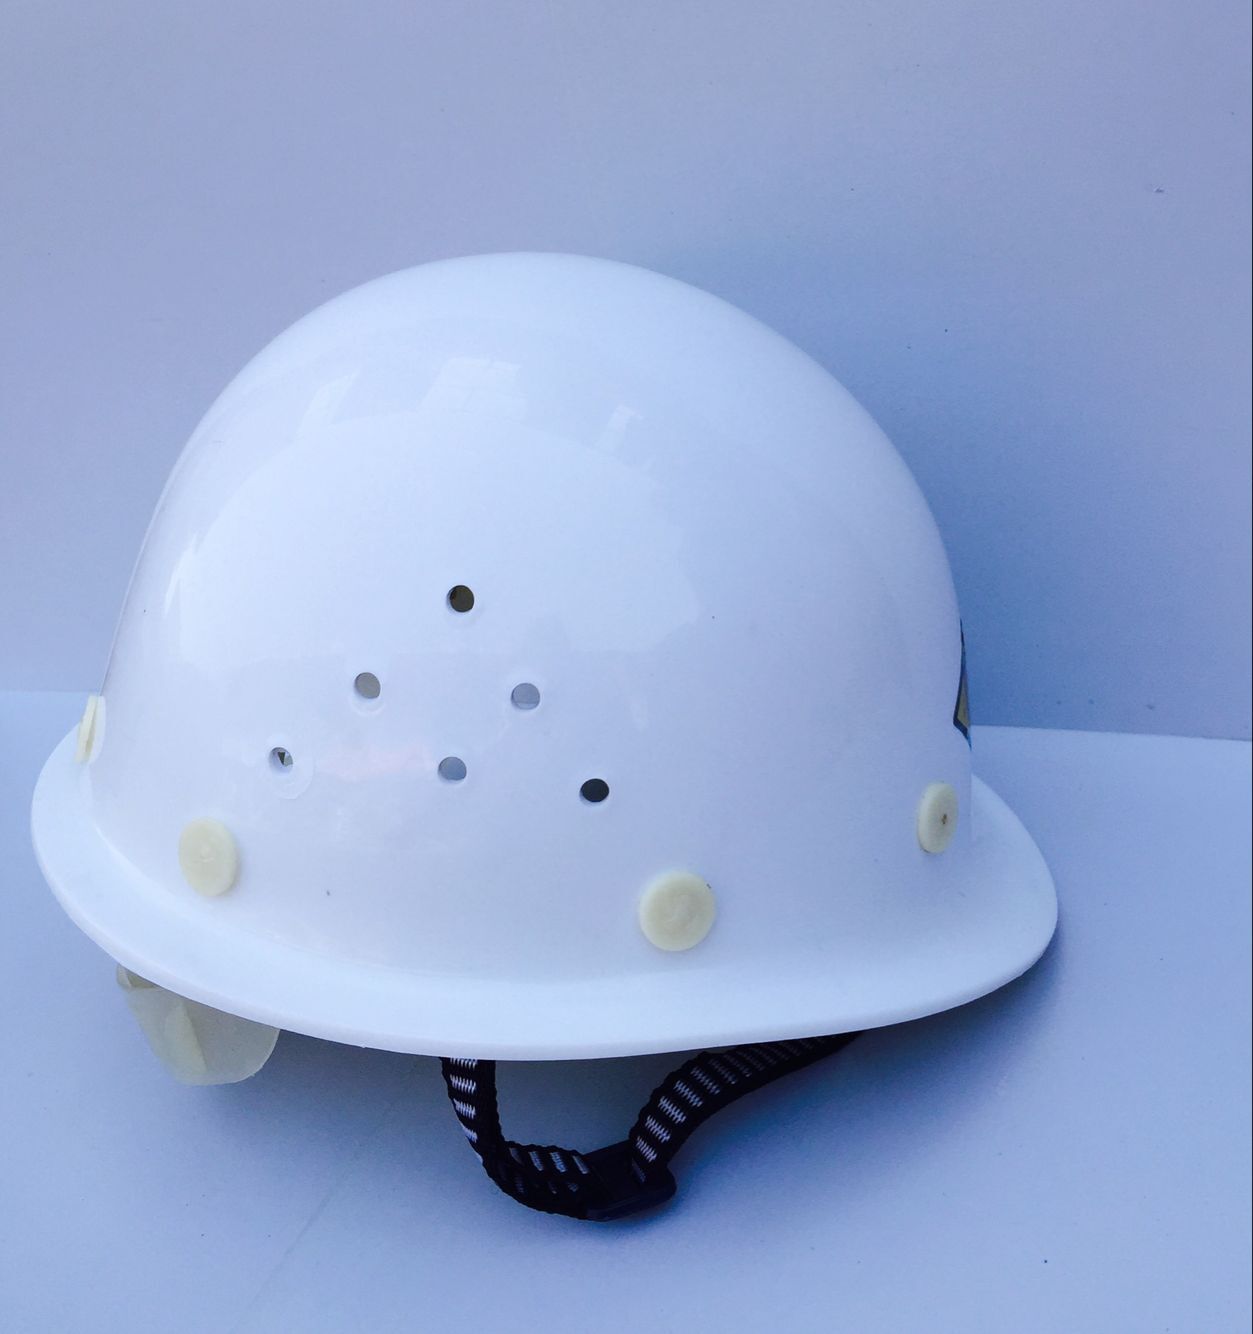 武汉市PE玻璃钢款式安全帽厂家安全帽价格武汉安全帽劳保用品工地防护帽直销PE玻璃钢款式安全帽